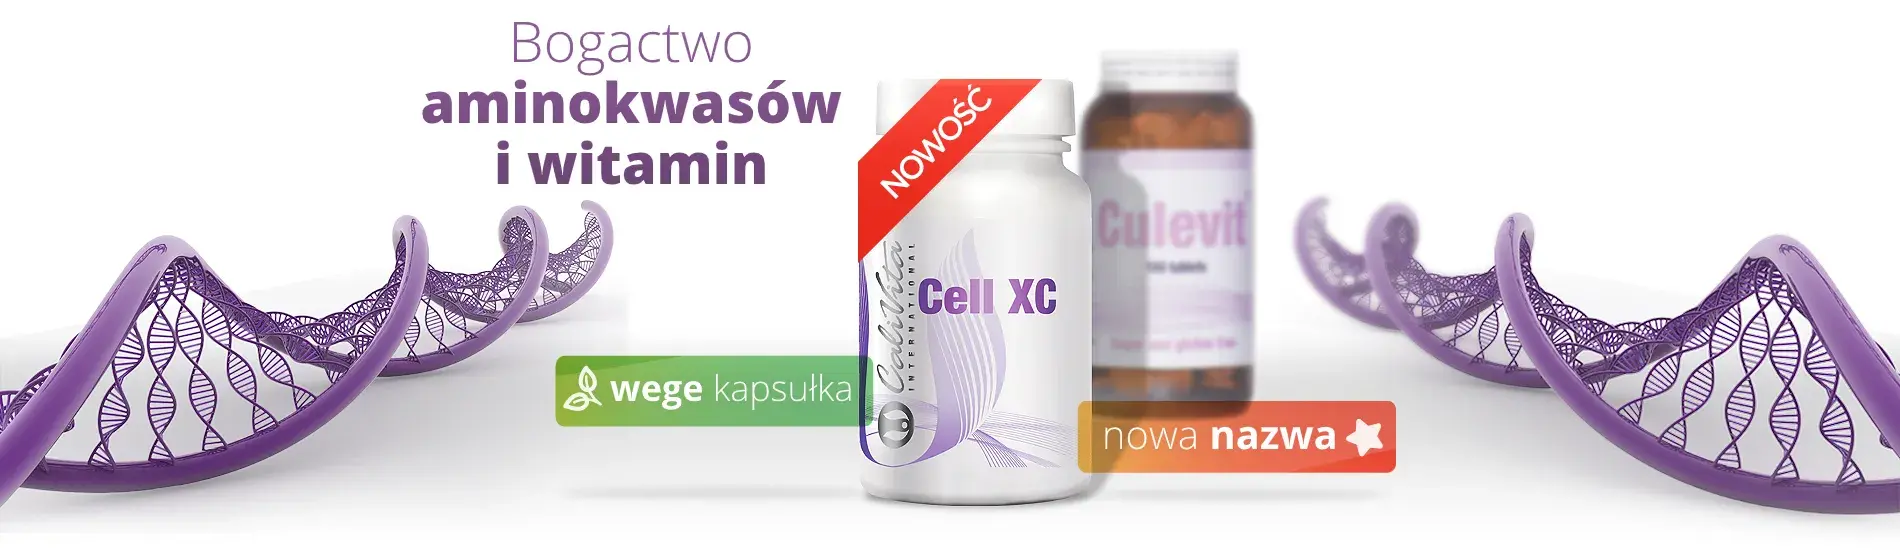 Cell XC - nowa nazwa produktu Culevit